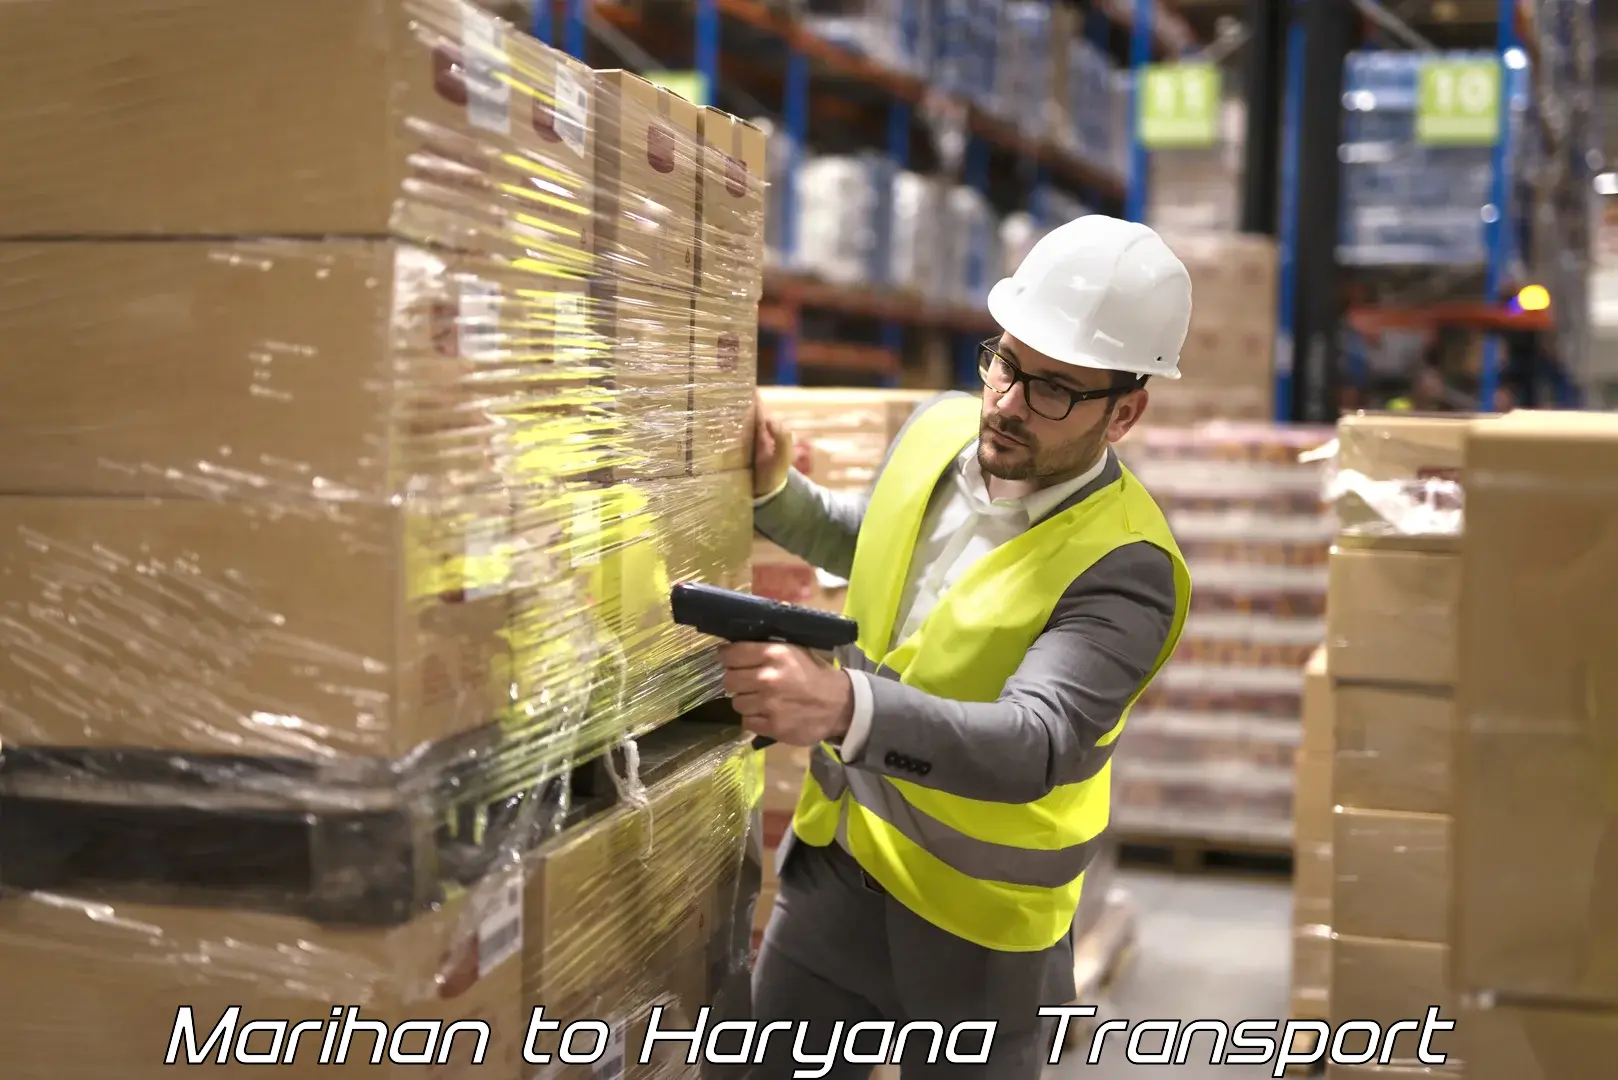 India truck logistics services Marihan to Nuh